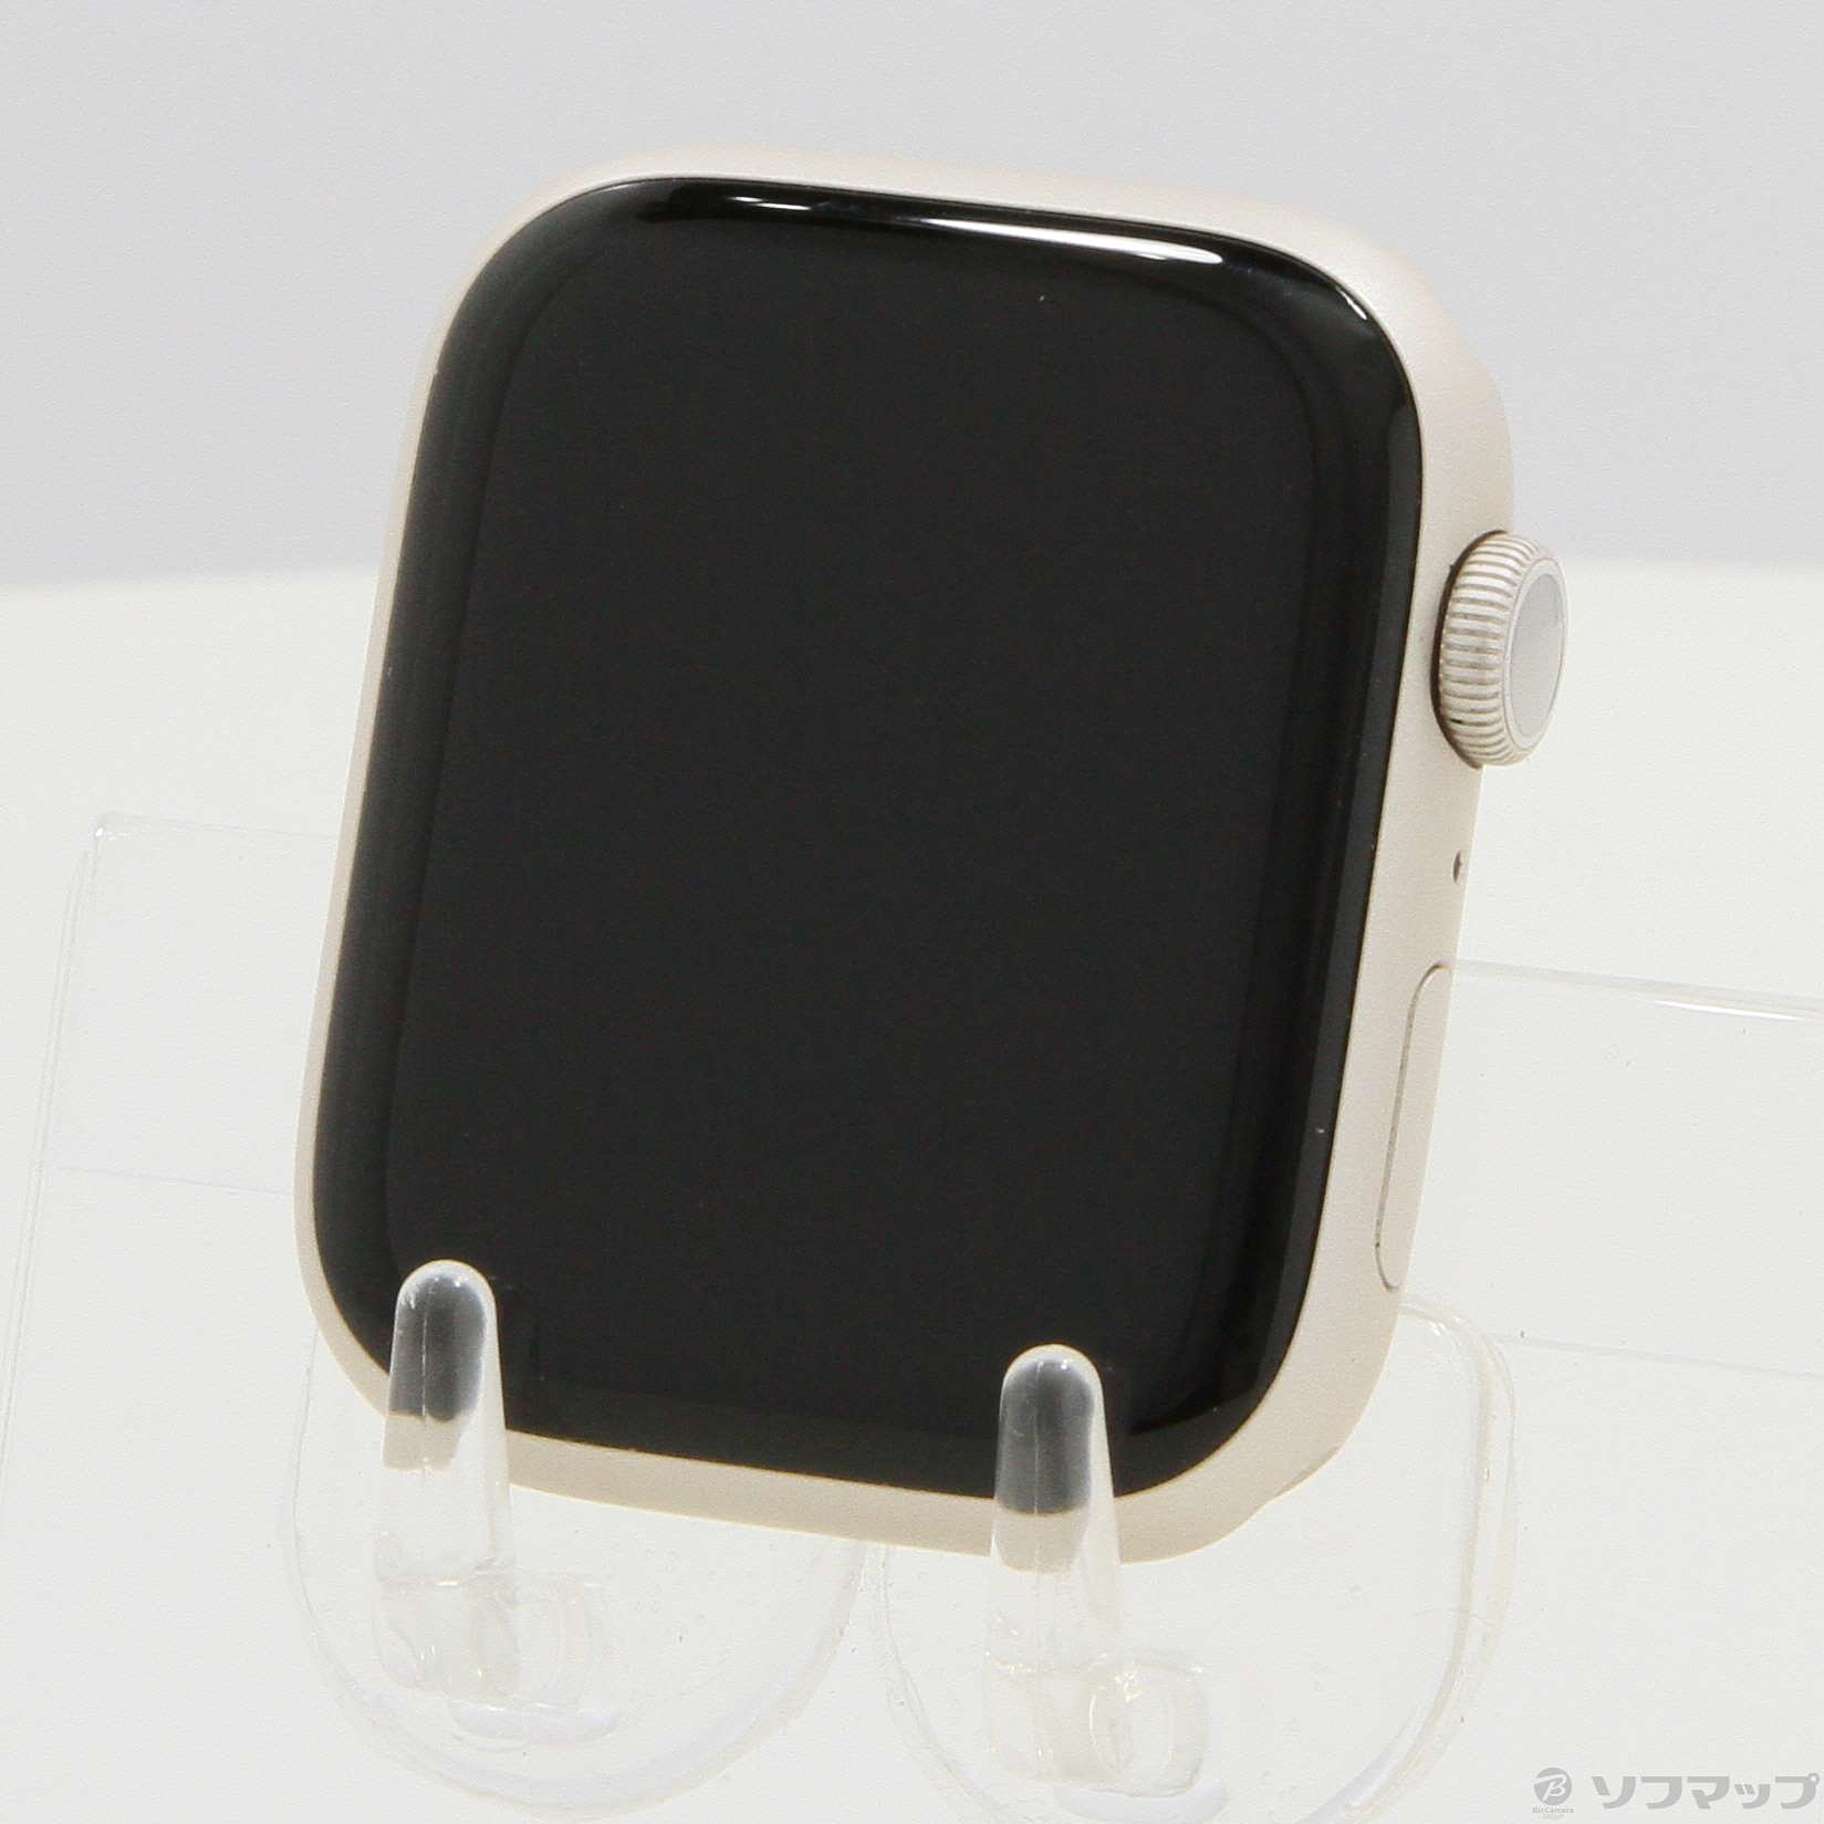 中古】Apple Watch Series 7 Nike GPS 45mm スターライトアルミニウム